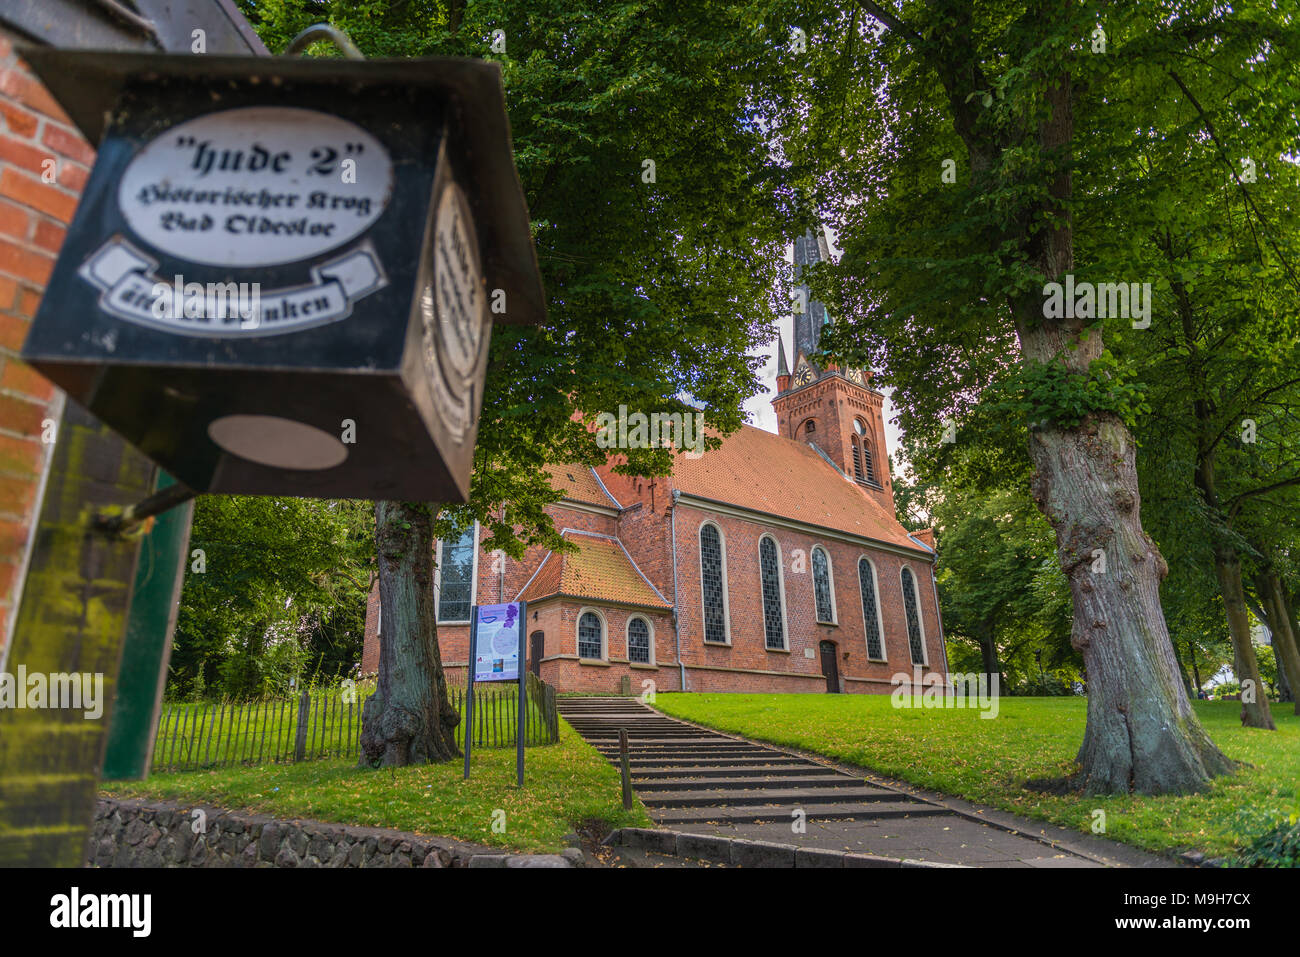 Pierre et Paul, Église dans le centre historique de la ville de Bad Oldesloe, comté de Storman, Schleswig-Holstein, Allemagne, Europe Banque D'Images